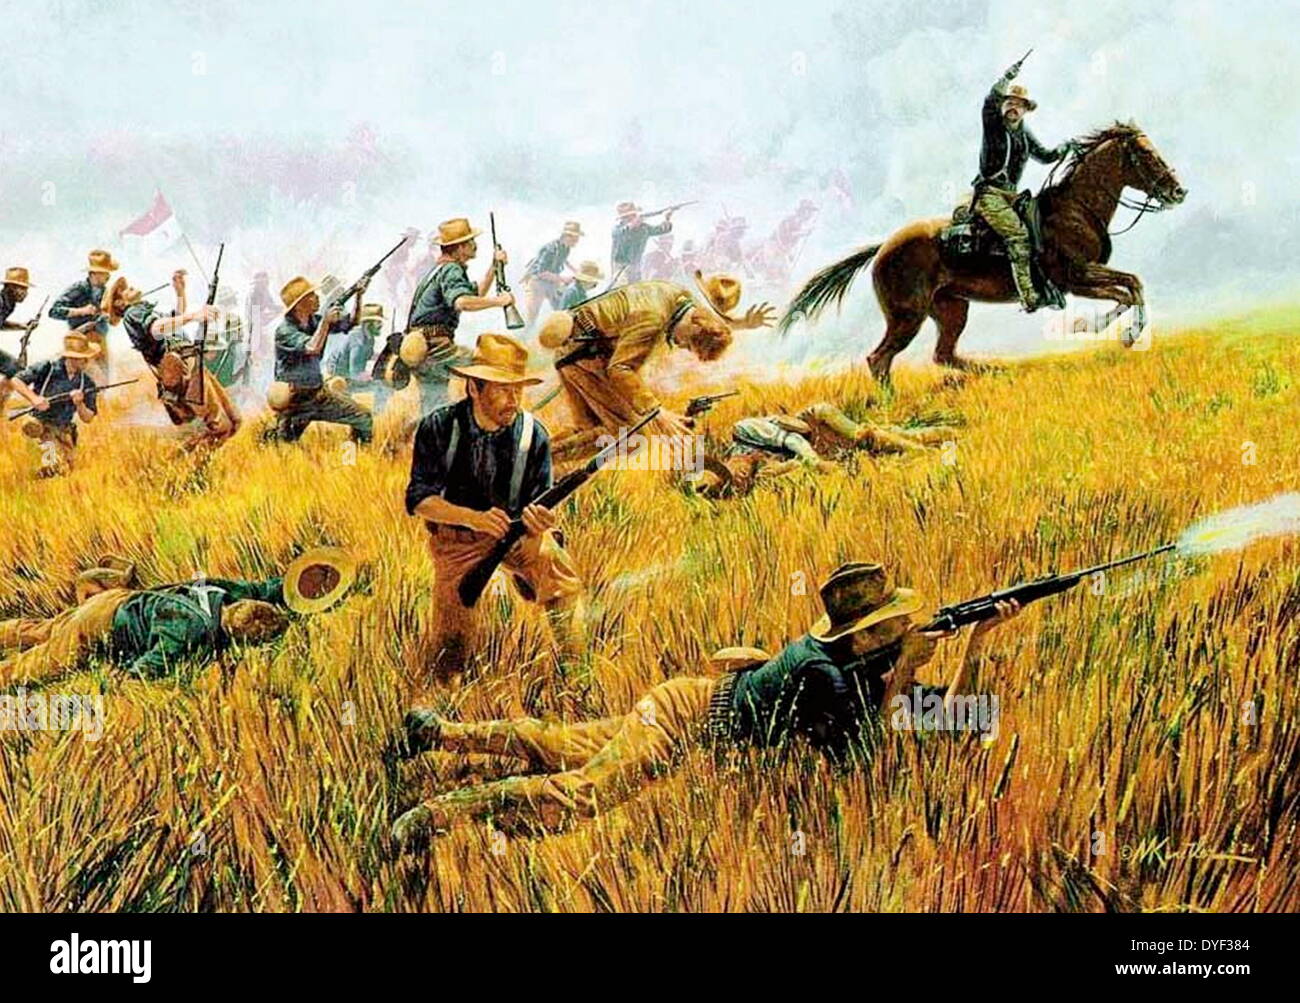 Portrait de 1898 Rough Riders. Un portrait de Rough Riders US en action à Cuba. Rough Riders est le nom donné à la 1ère Cavalerie volontaire des États-Unis pendant la guerre hispano-américaine.